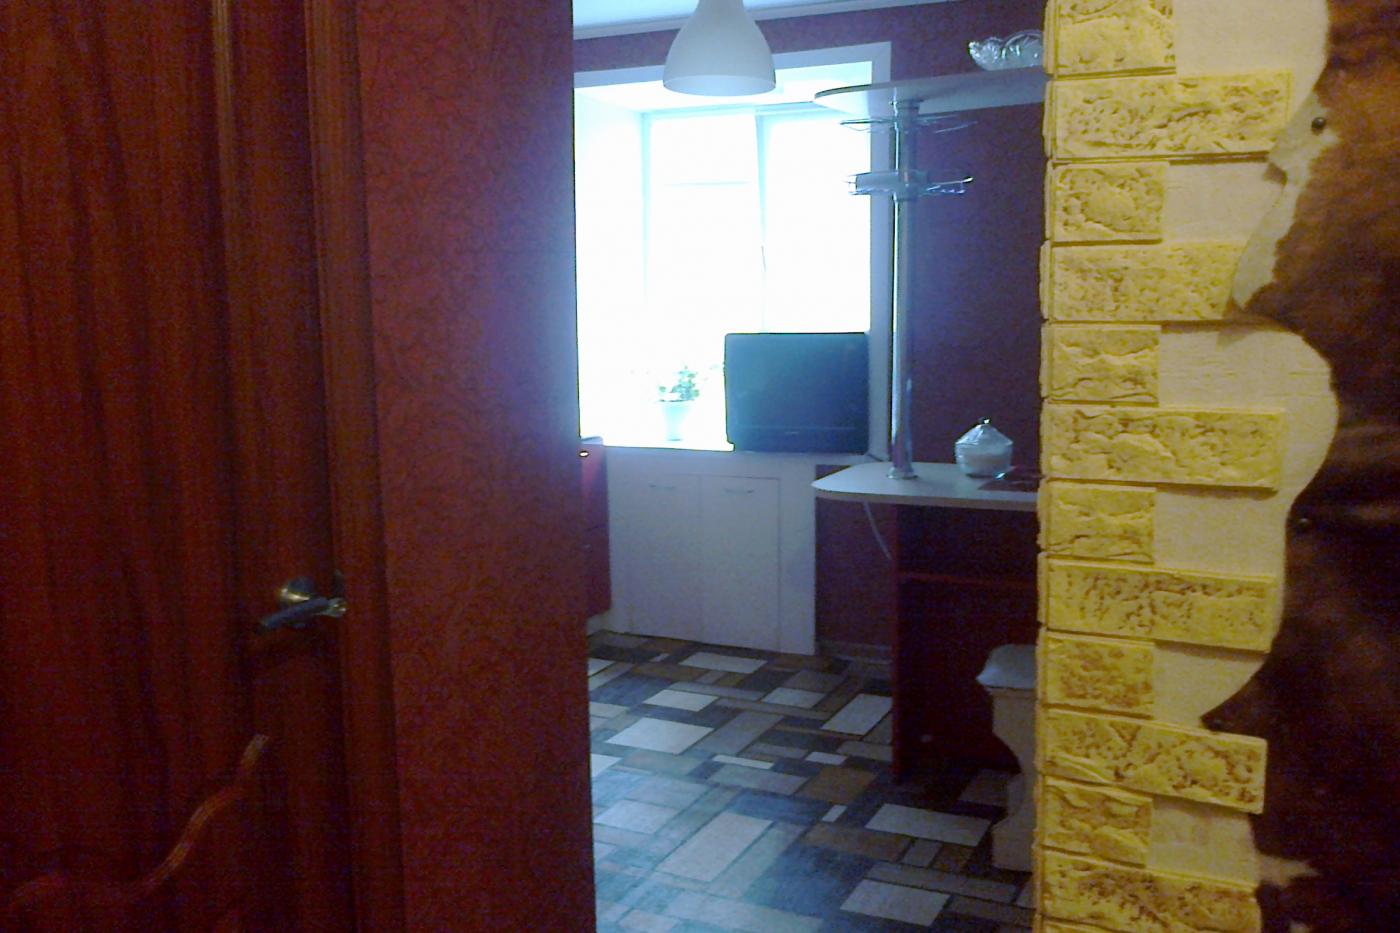 1-комнатная квартира посуточно (вариант № 4200), ул. Мавлютова улица, фото № 7